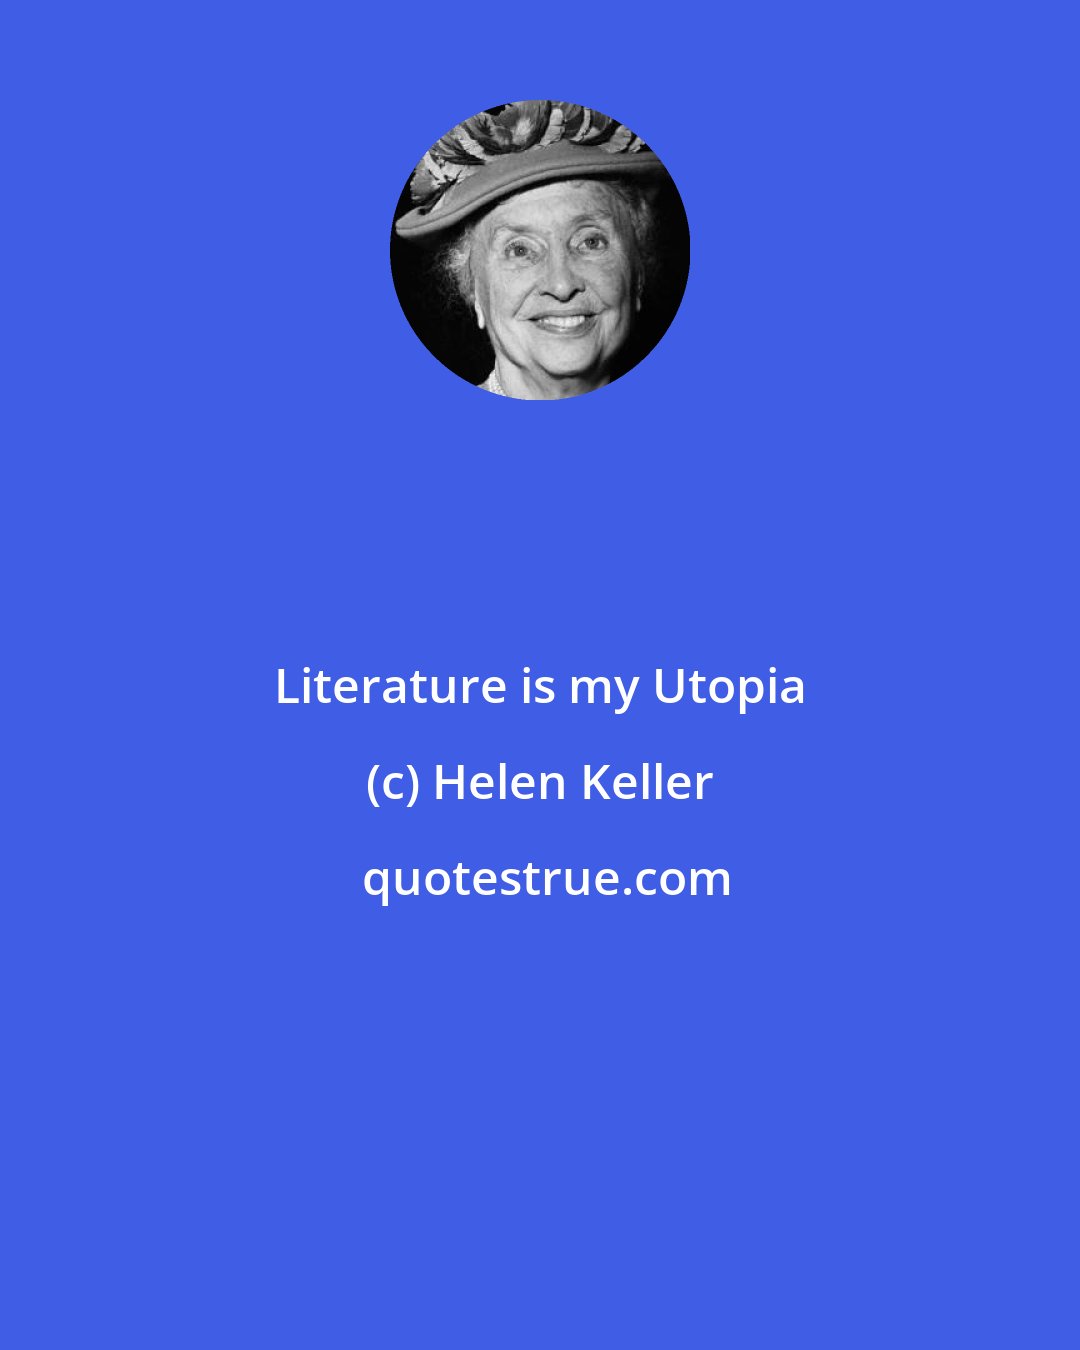 Helen Keller: Literature is my Utopia